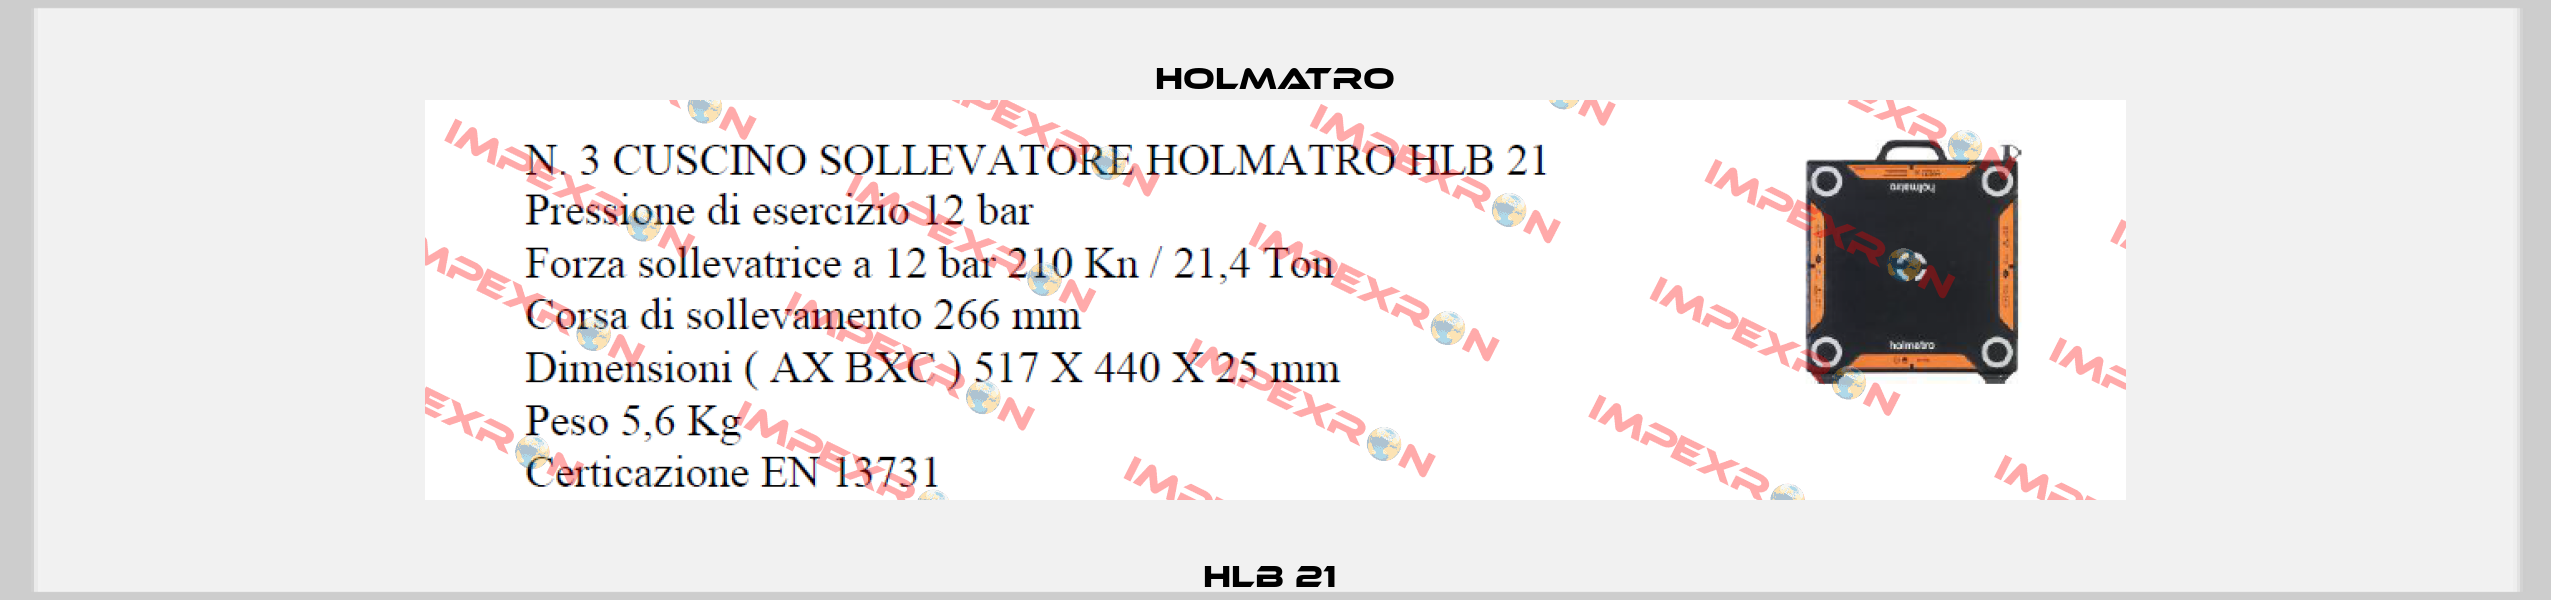 HLB 21  Holmatro